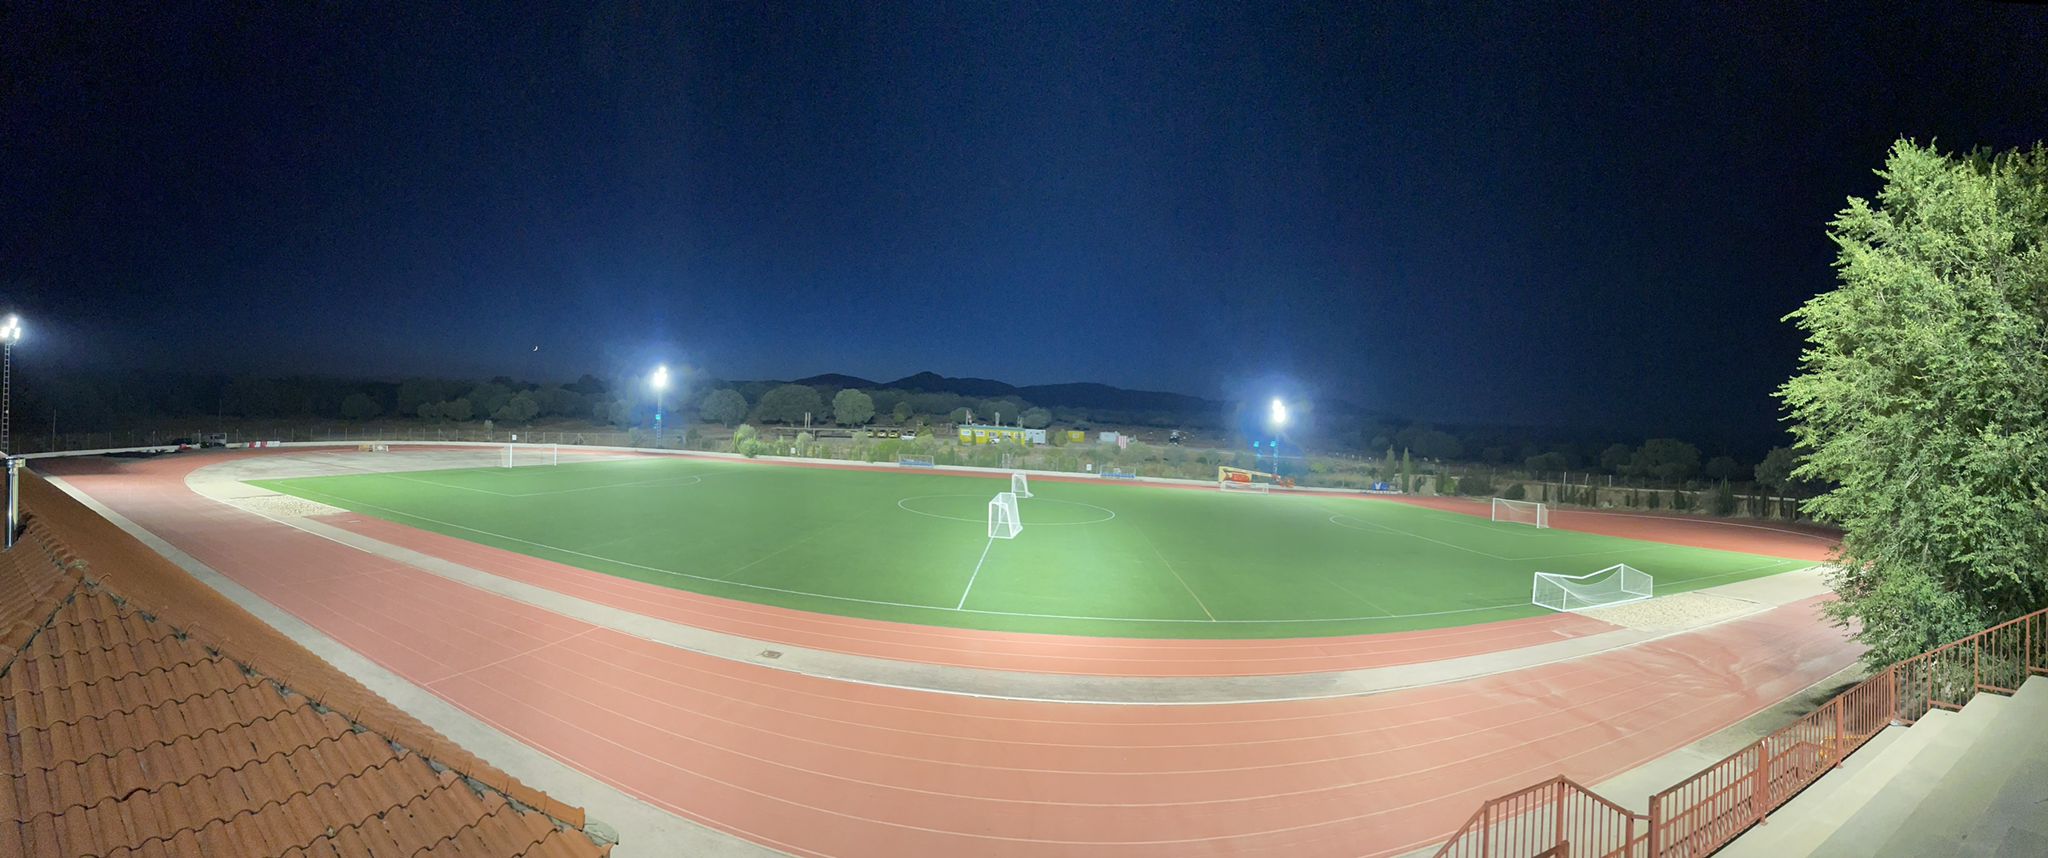 Las instalaciones deportivas de Valdemorillo  suman una importante mejora con la nueva iluminación del campo de fútbol y la pista de atletismo